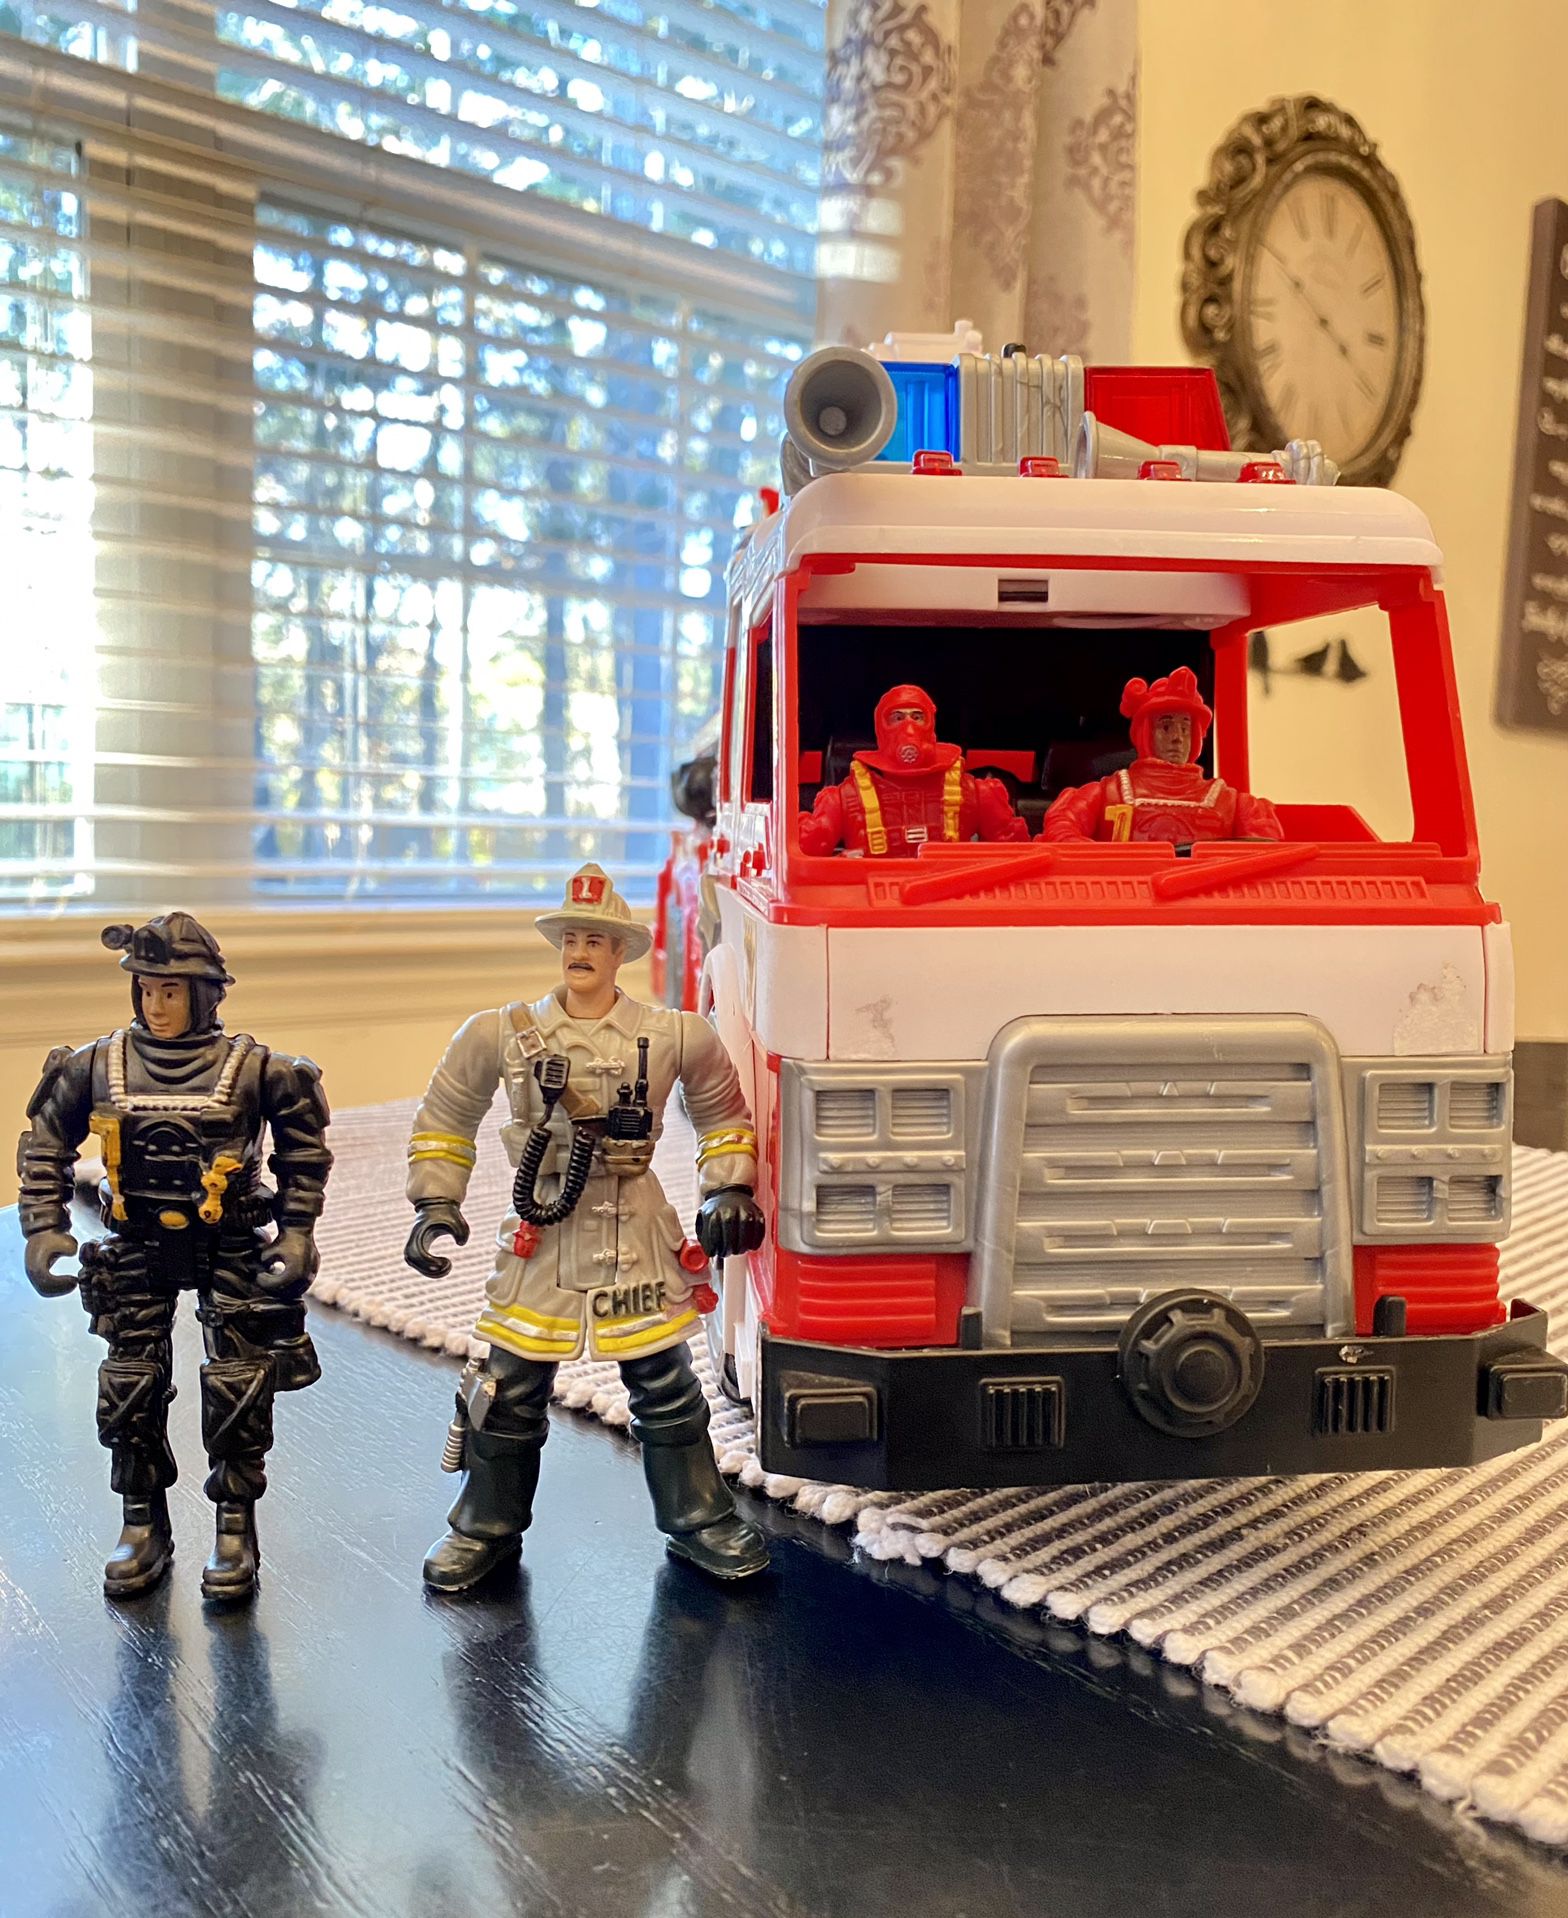 Fire Fighters & Fire Truck 🚒